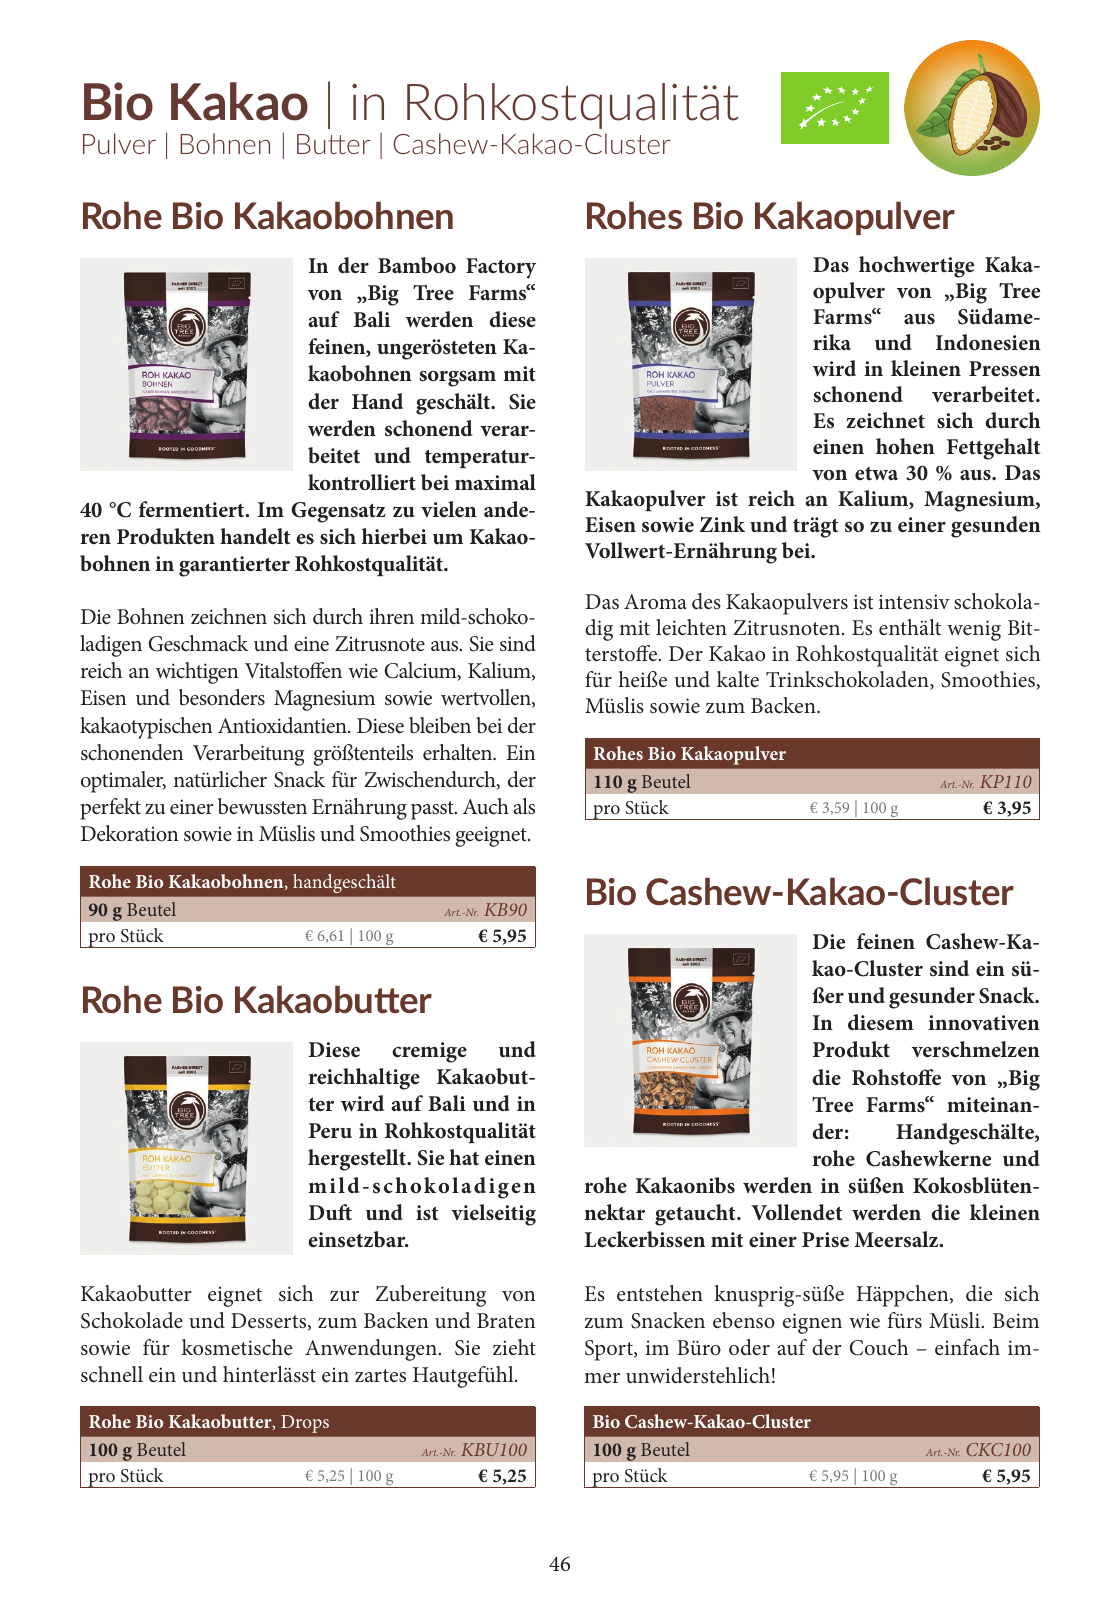 Vorschau Katalog 2019/2020 Seite 46